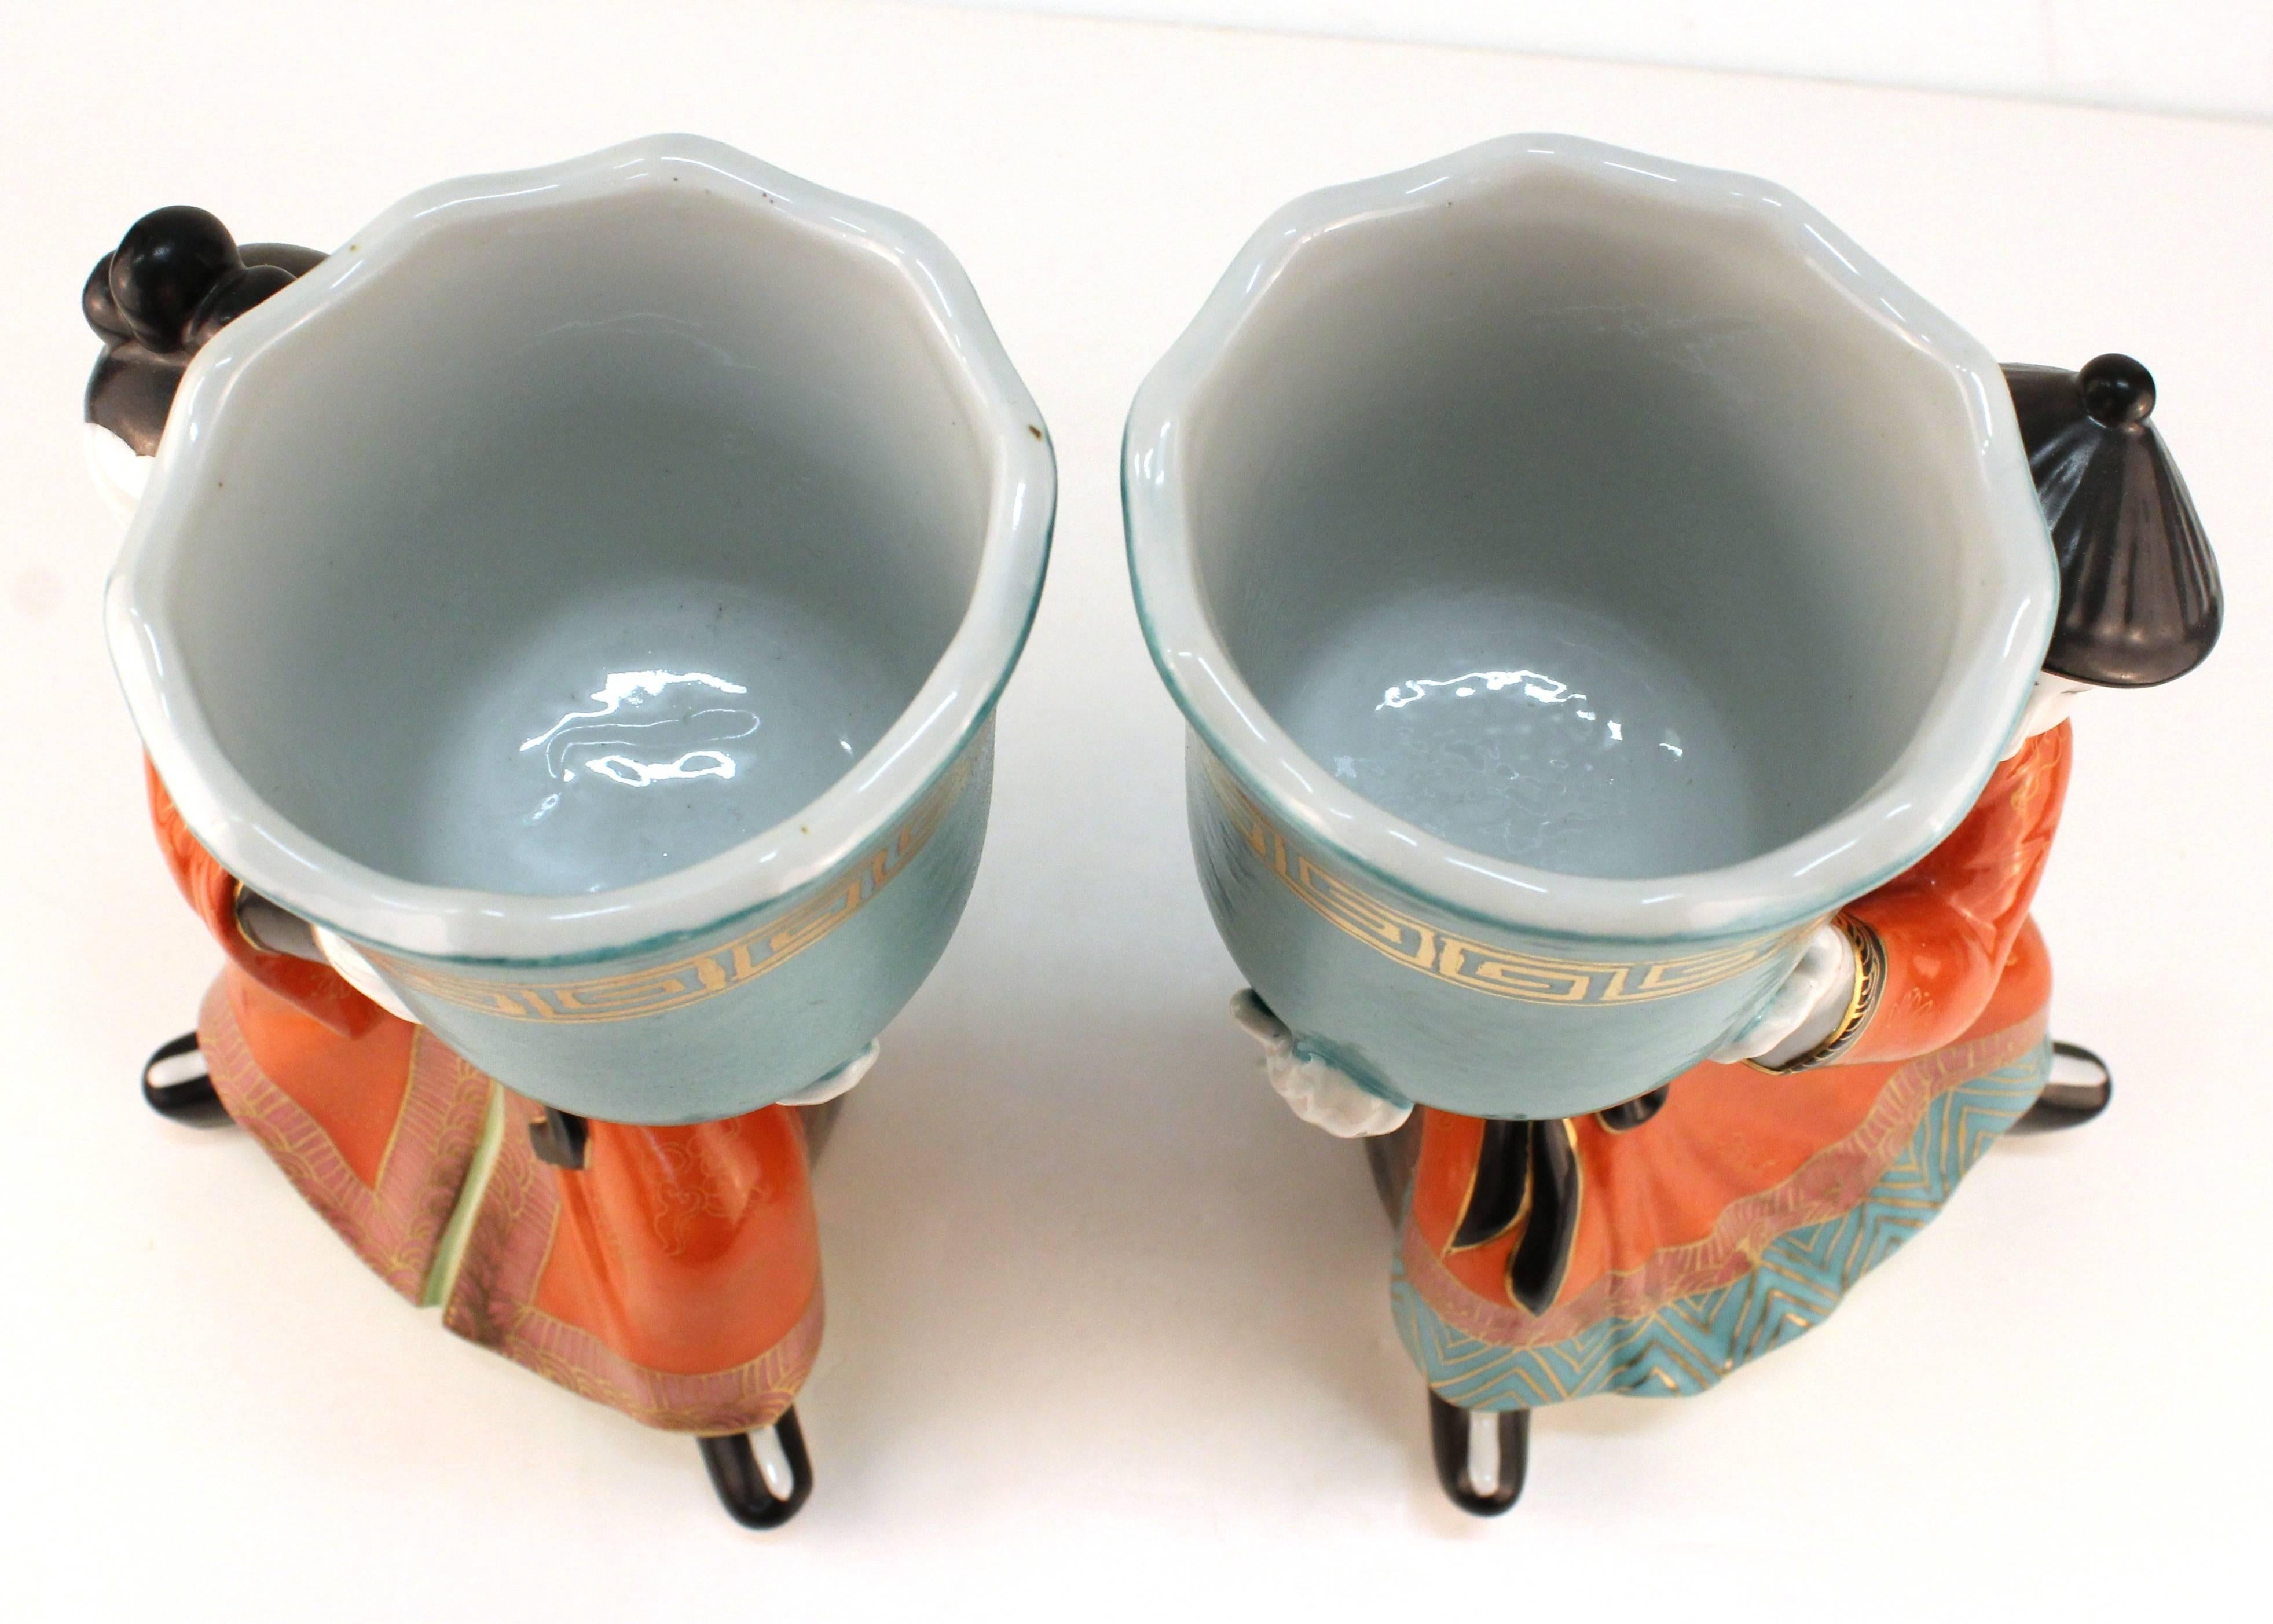 Gumps Ceramic Chinoiserie Figures 2